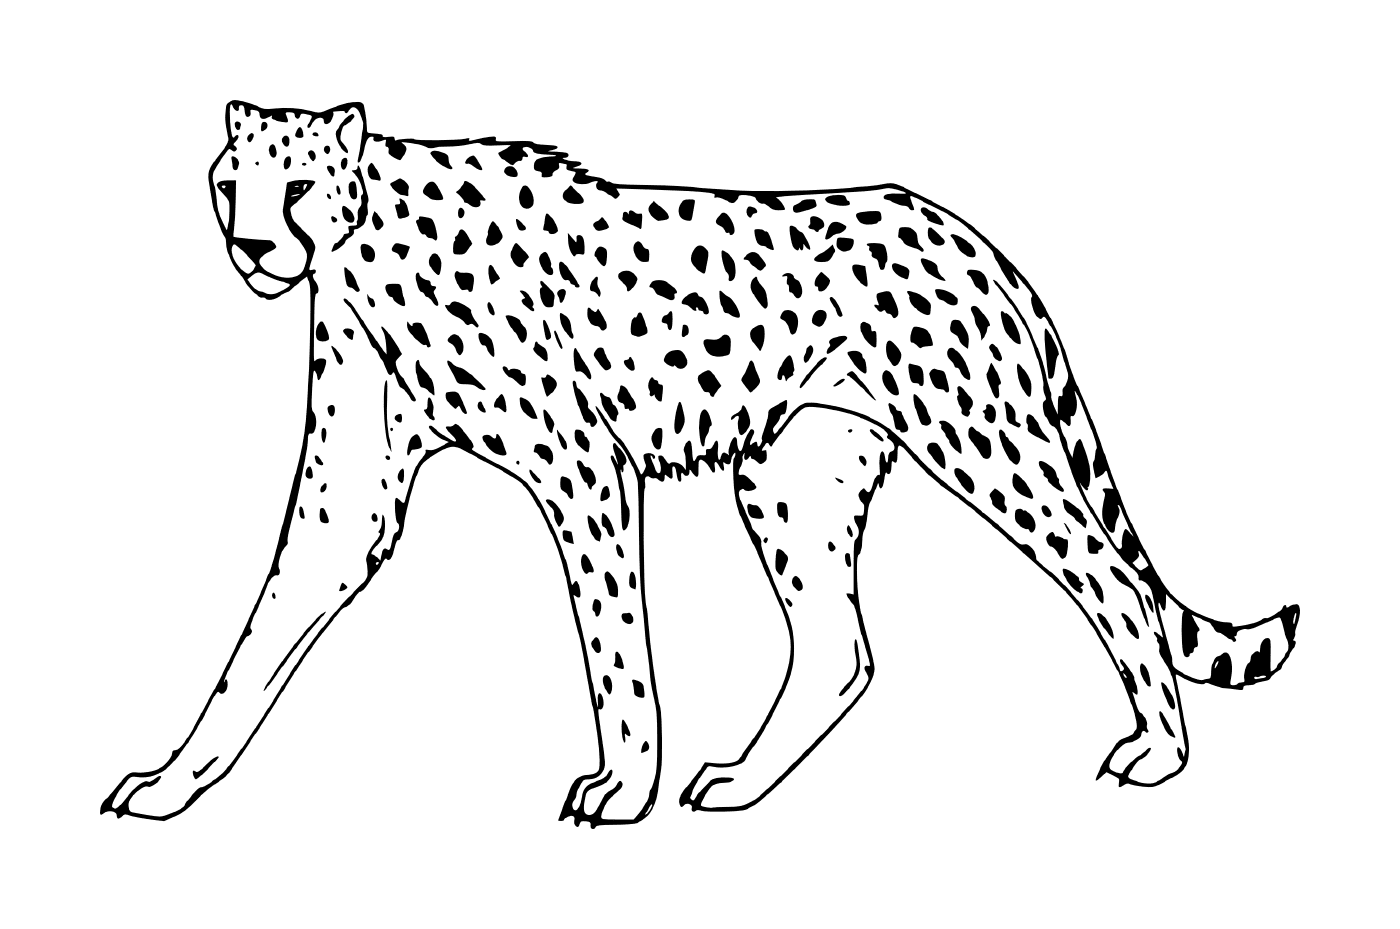  un guepardo caminando 